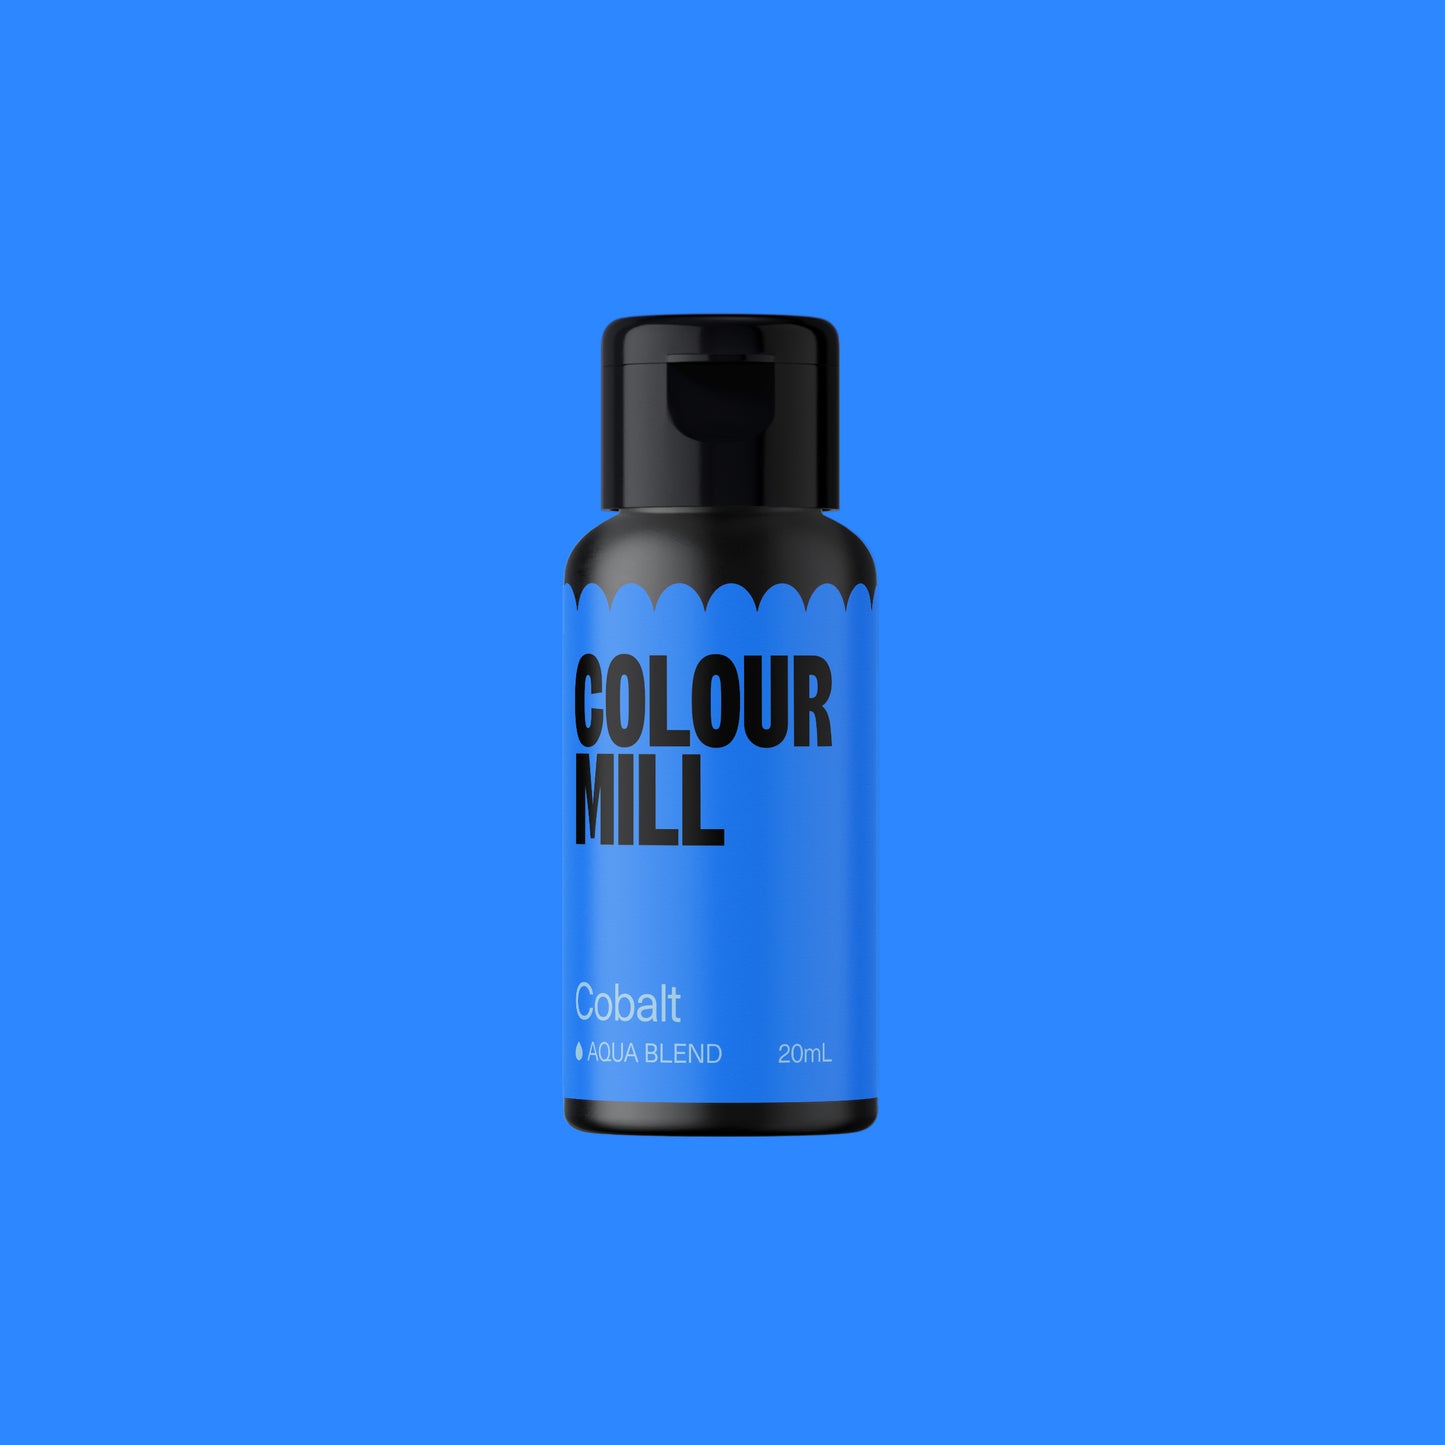 Colour Mill Aqua Blend Cobalt 20ml